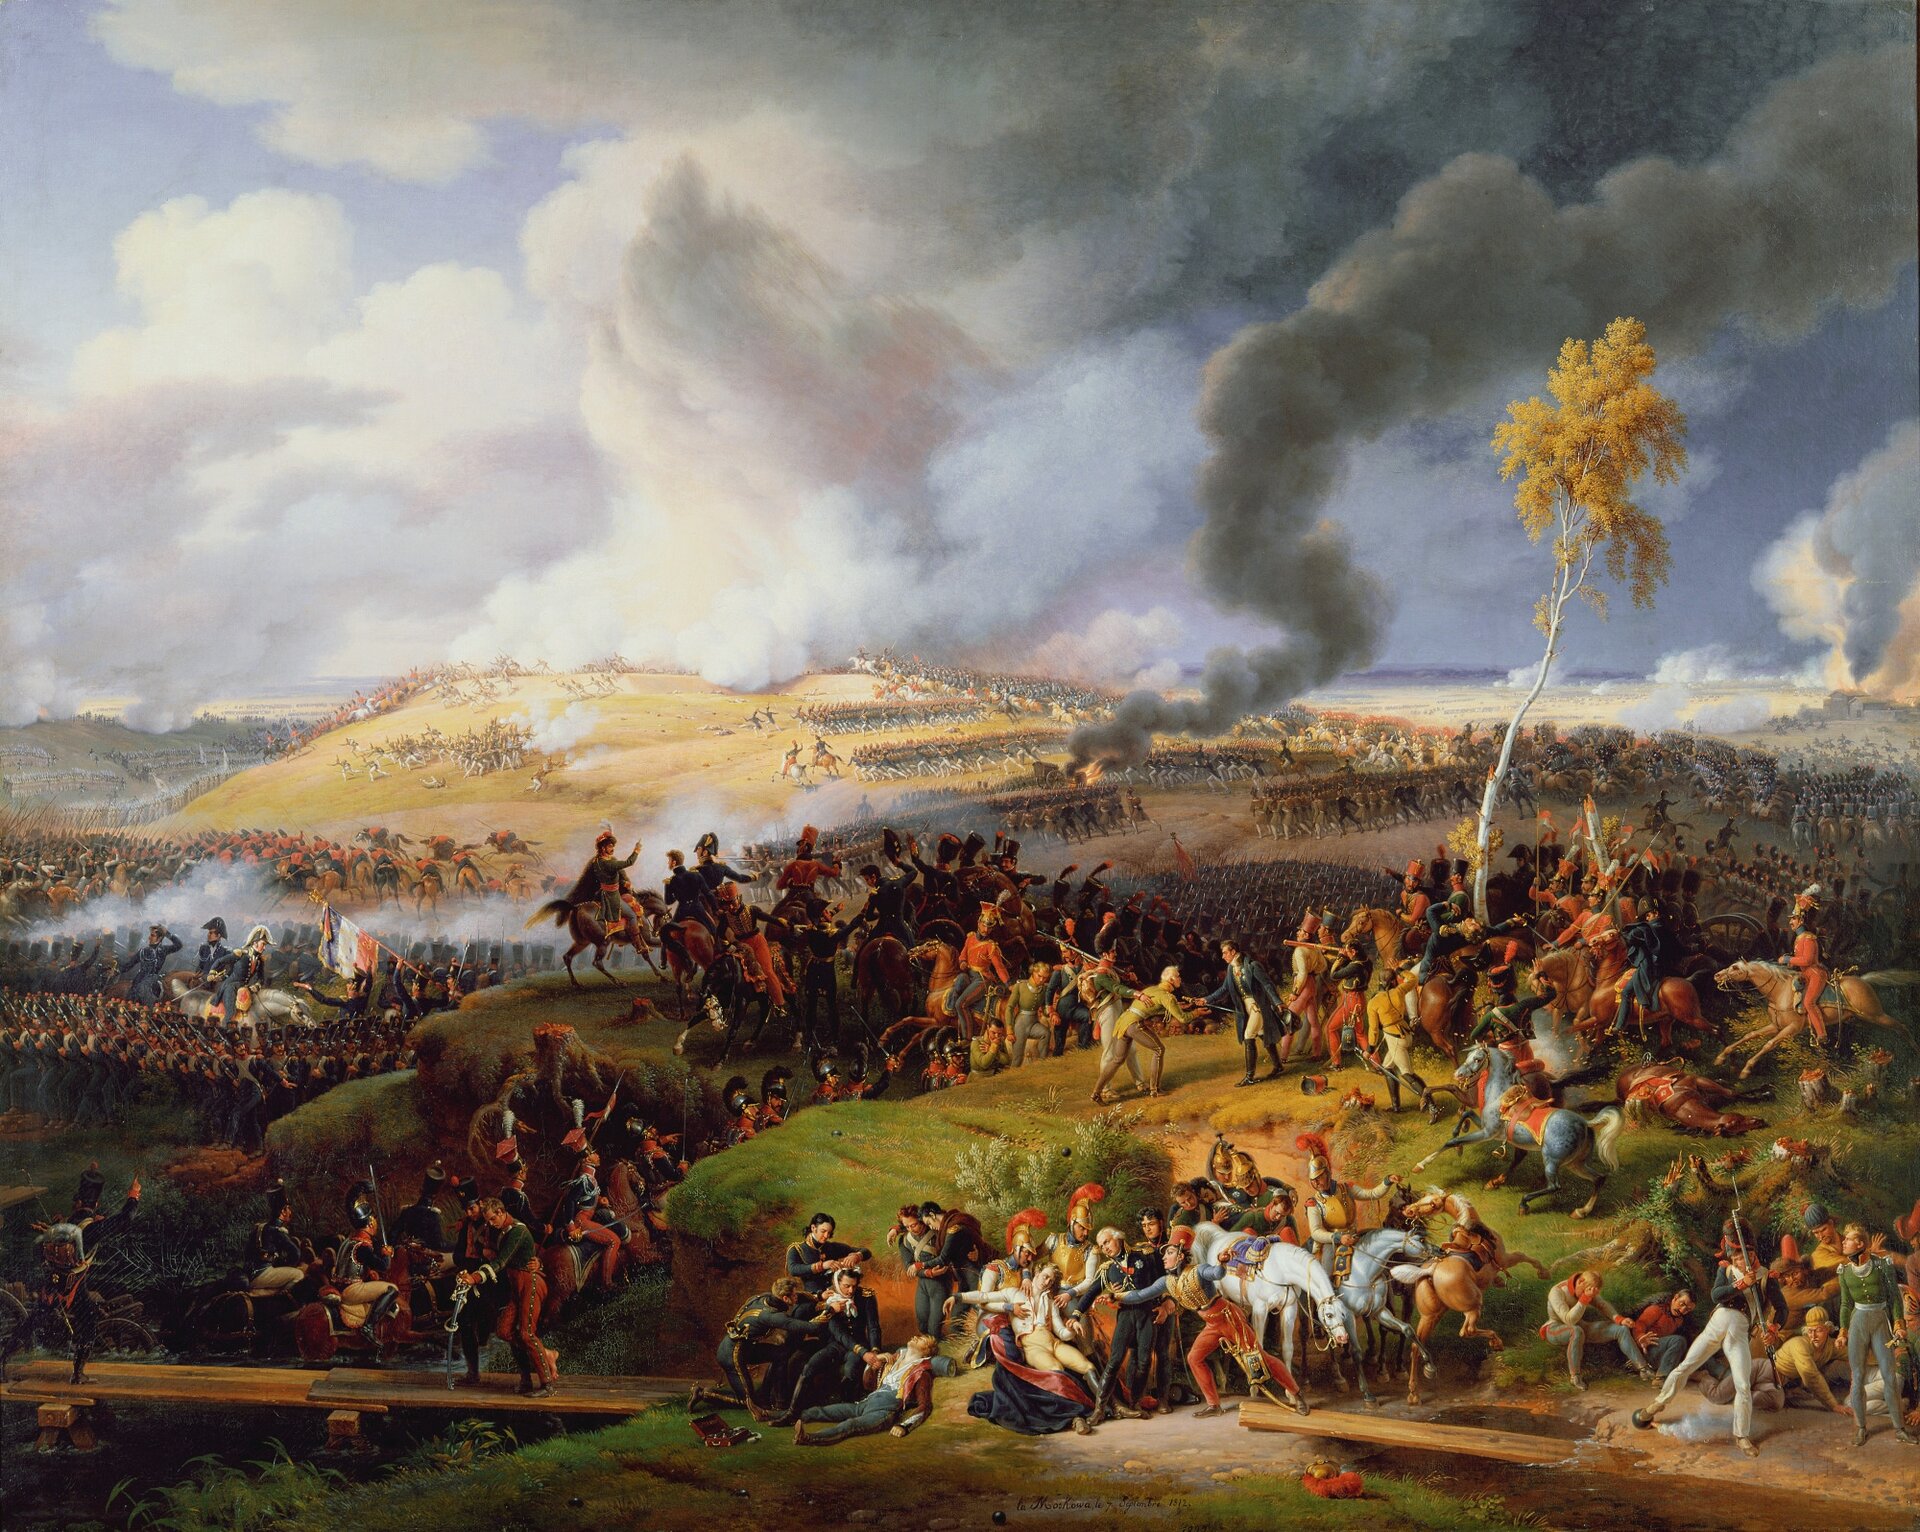 Obraz przedstawia scenę batalistyczną. Na rozległych pagórkach widać ścierające się wojska francuskie i rosyjskie. Widać żołnierzy piechoty i kawalerię. Nad polem bitwy unoszą się dymy od wystrzałów,